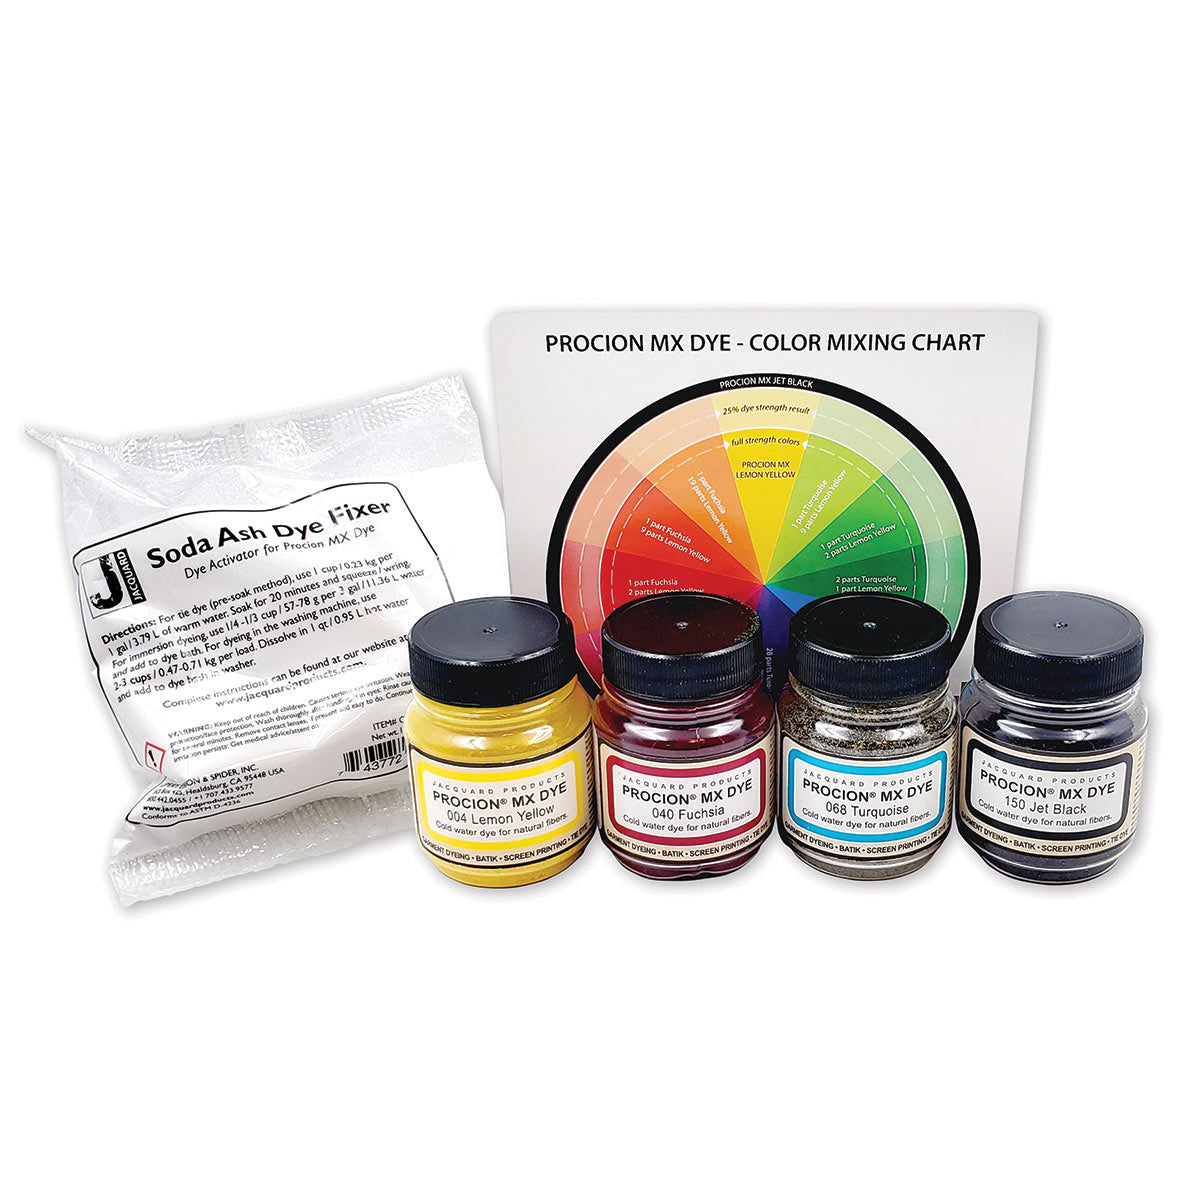 Jacquard - Procion MX Dye - 4 Colours with Soda Ash set